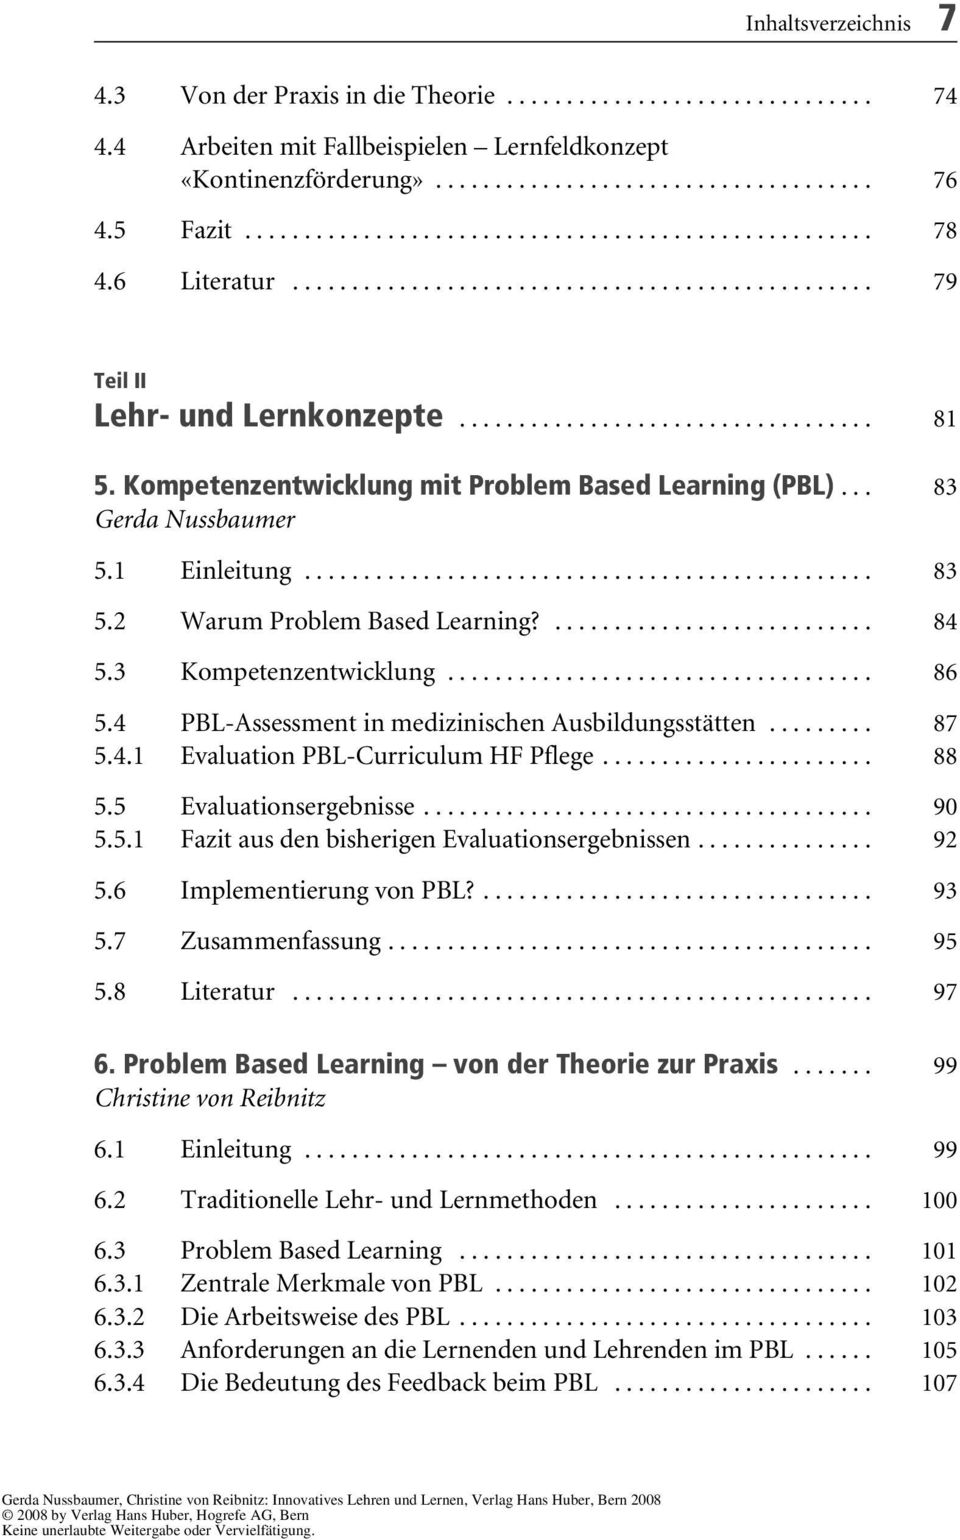 Kompetenzentwicklung mit Problem Based Learning (PBL)... 83 Gerda Nussbaumer 5.1 Einleitung................................................ 83 5.2 Warum Problem Based Learning?........................... 84 5.